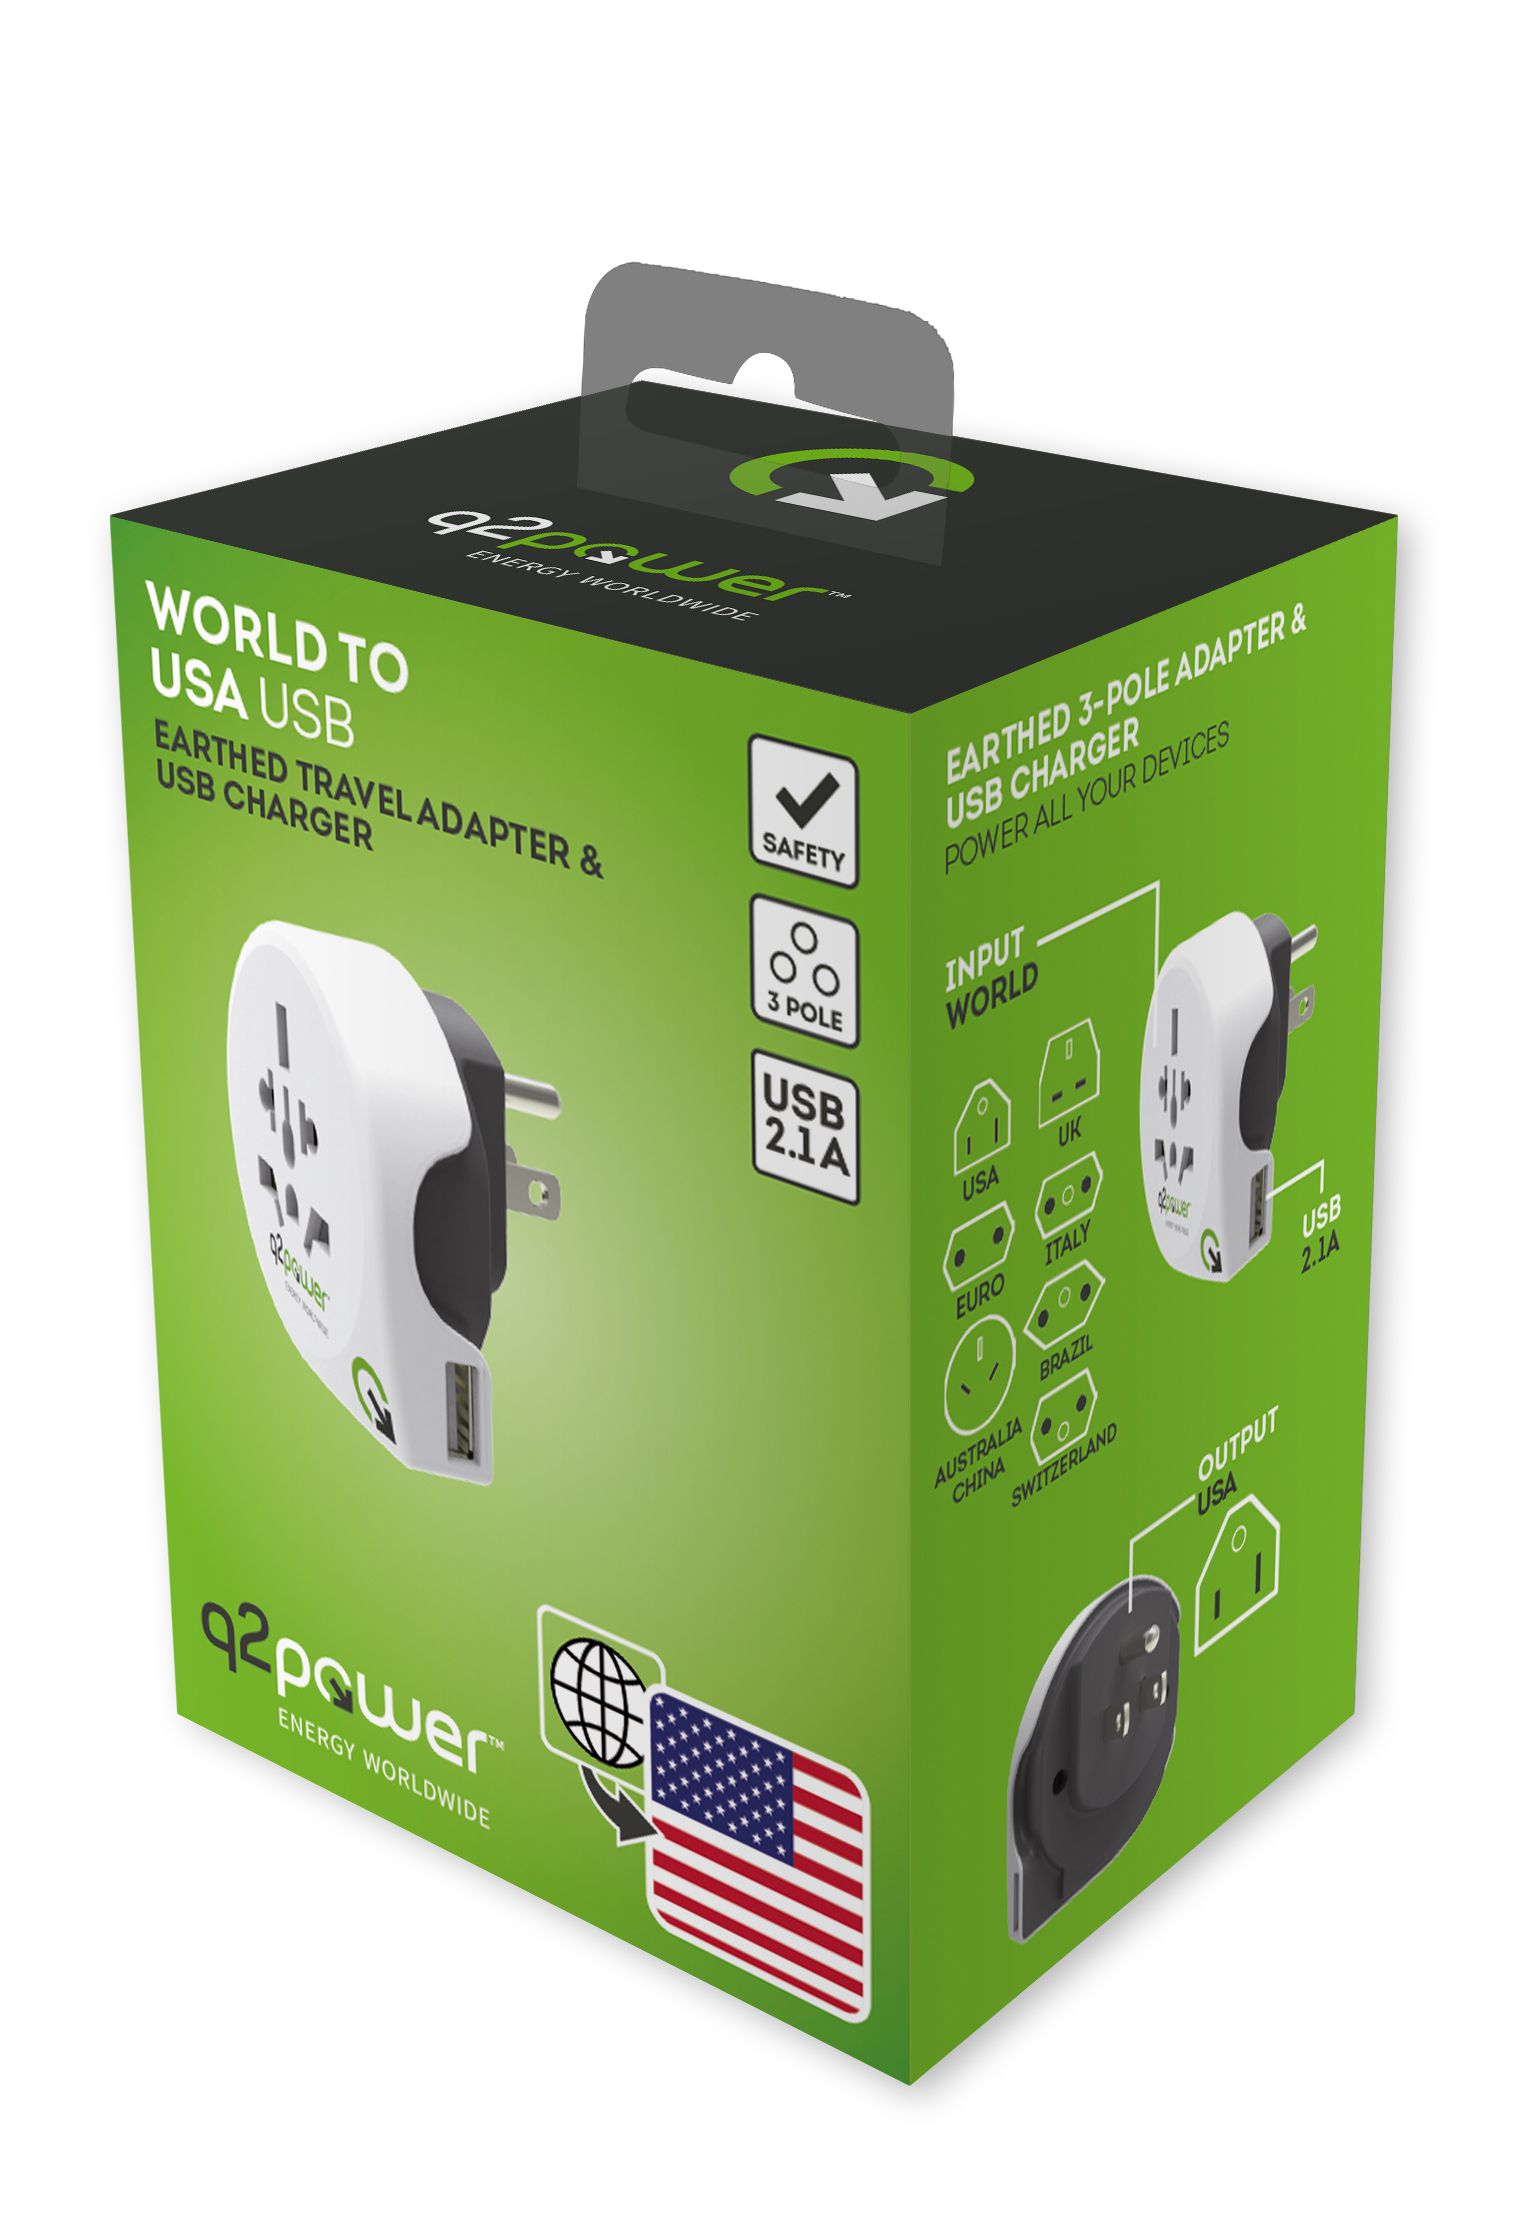 Adattatore mondo Q2 Power Welt Adapter USA - USB